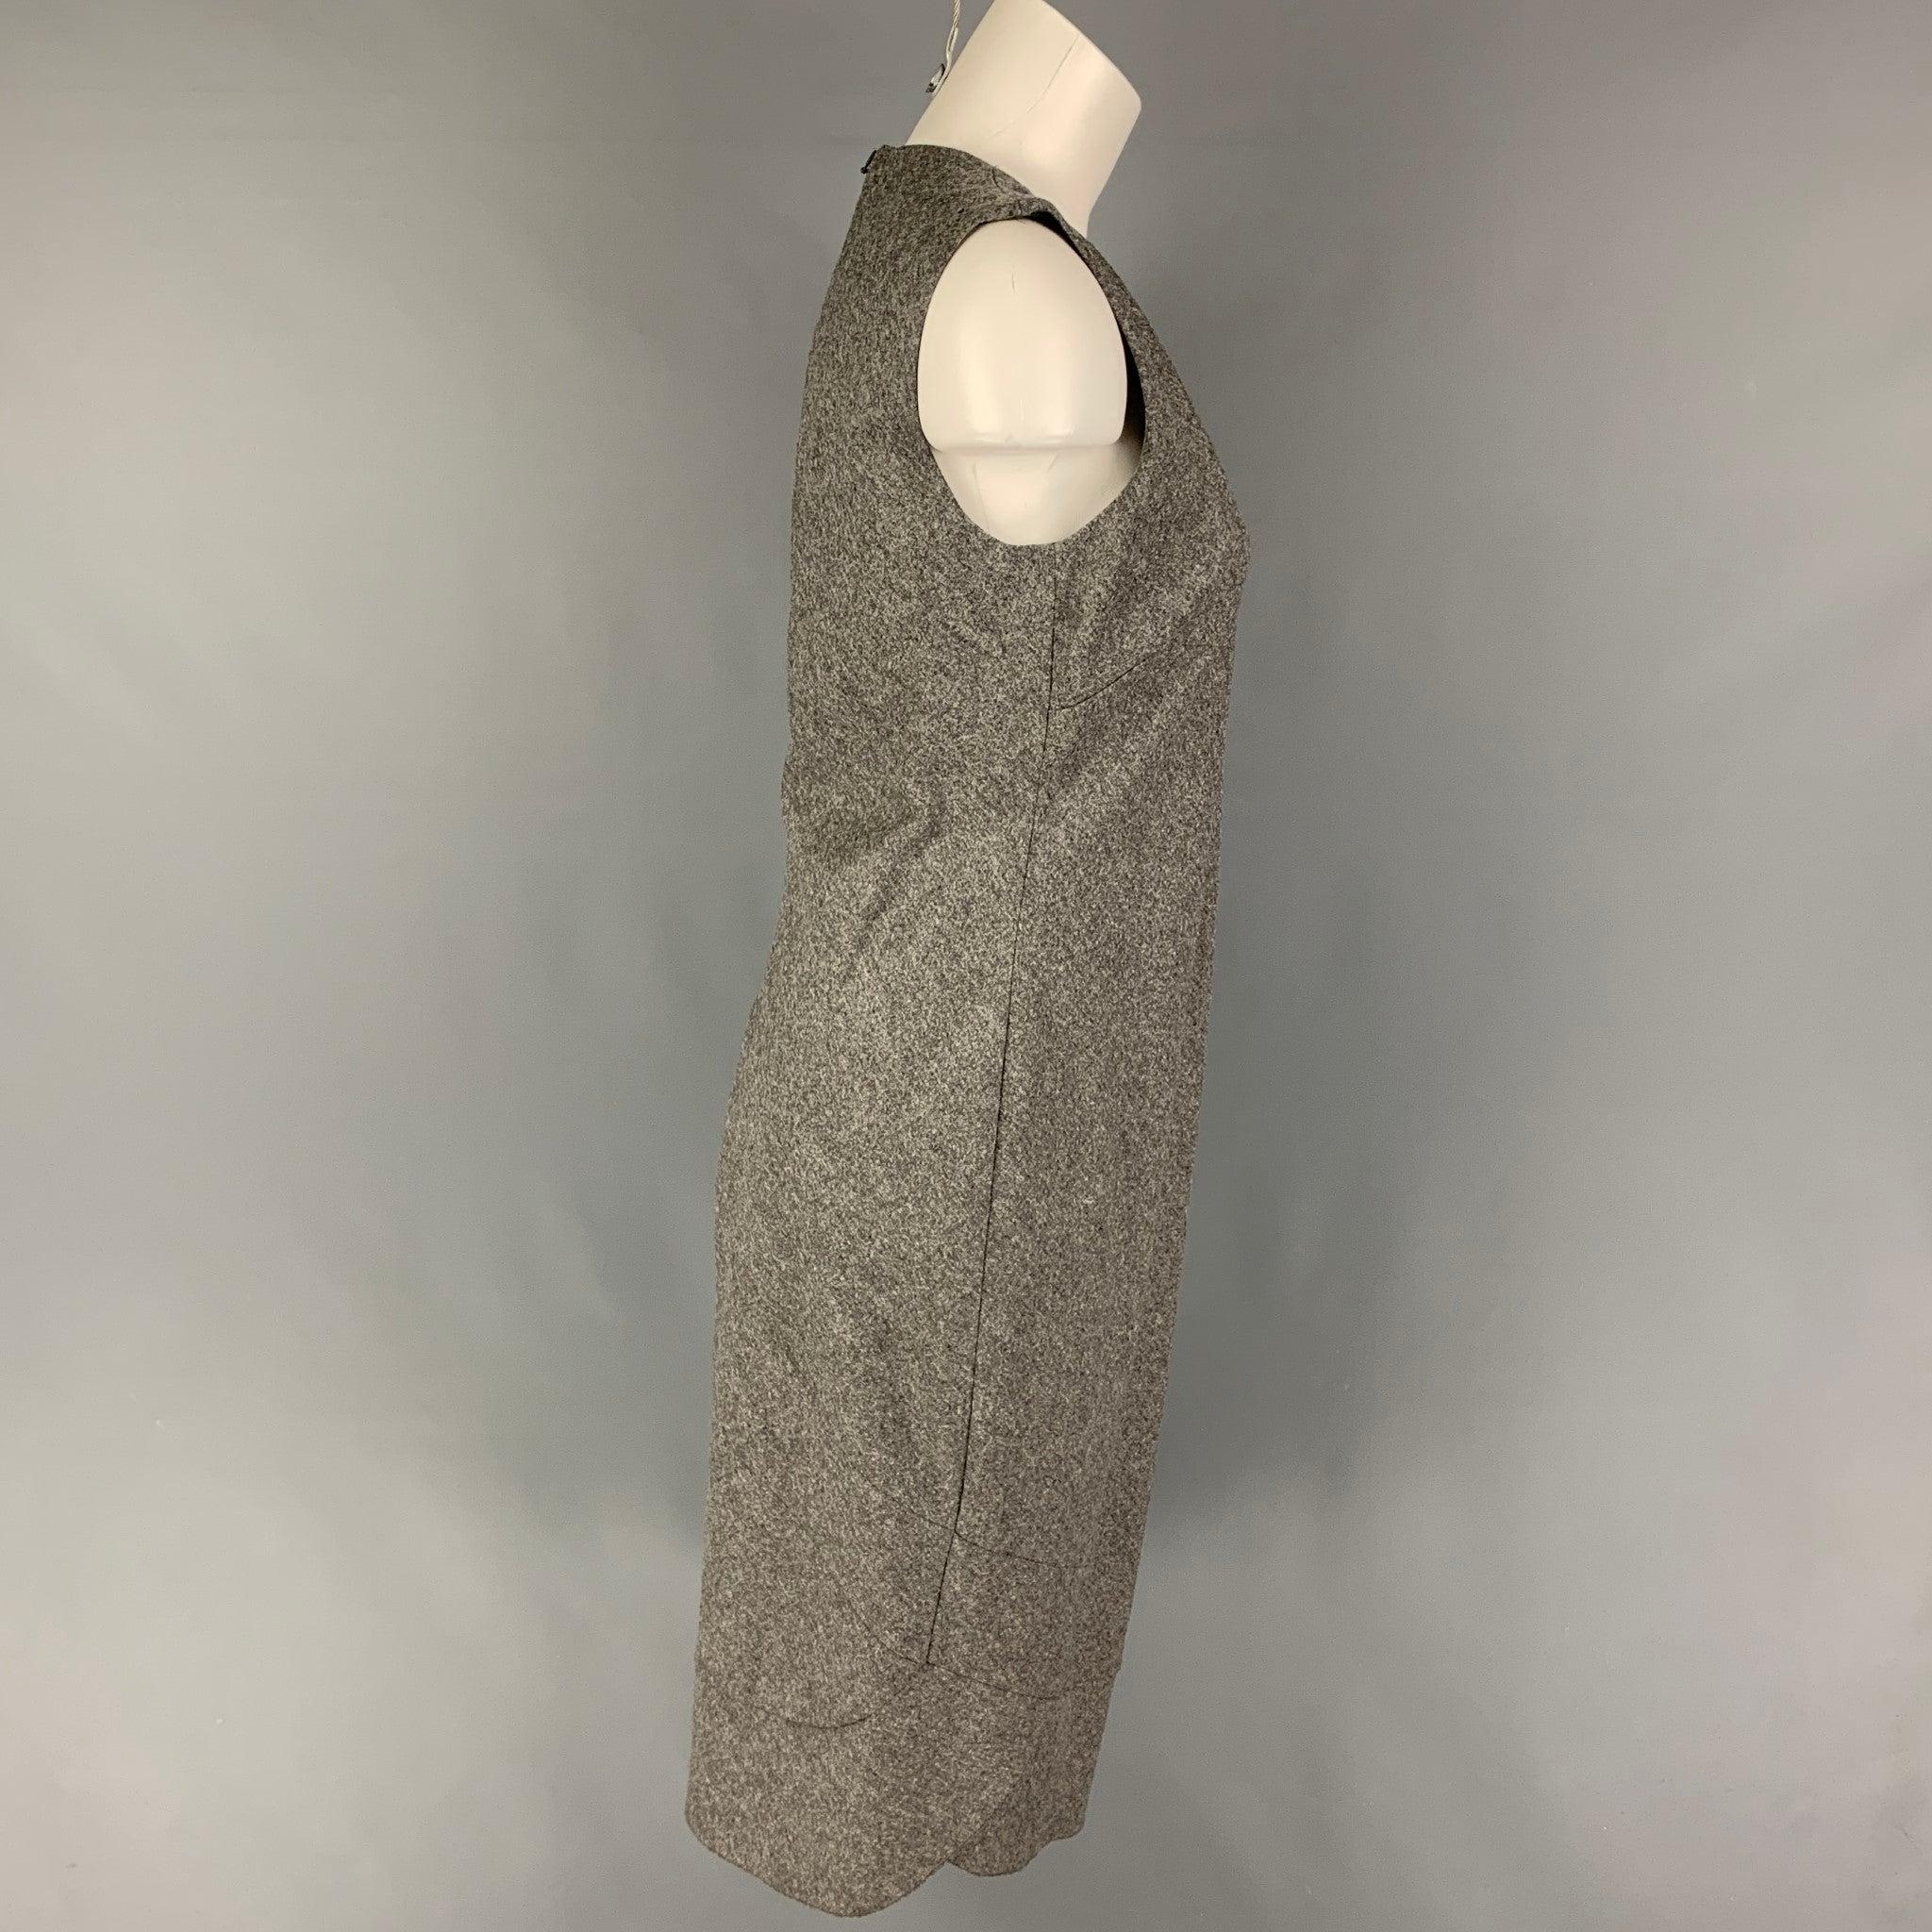 La robe RICHARD TYLER est réalisée en laine vierge/cachemire grise et présente une encolure en V, des manches et une fermeture zippée au dos.
Très bien
Etat d'occasion. 

Marqué :   44 

Mesures : 
 
Épaule : 14.5 pouces  Poitrine : 34 pouces 